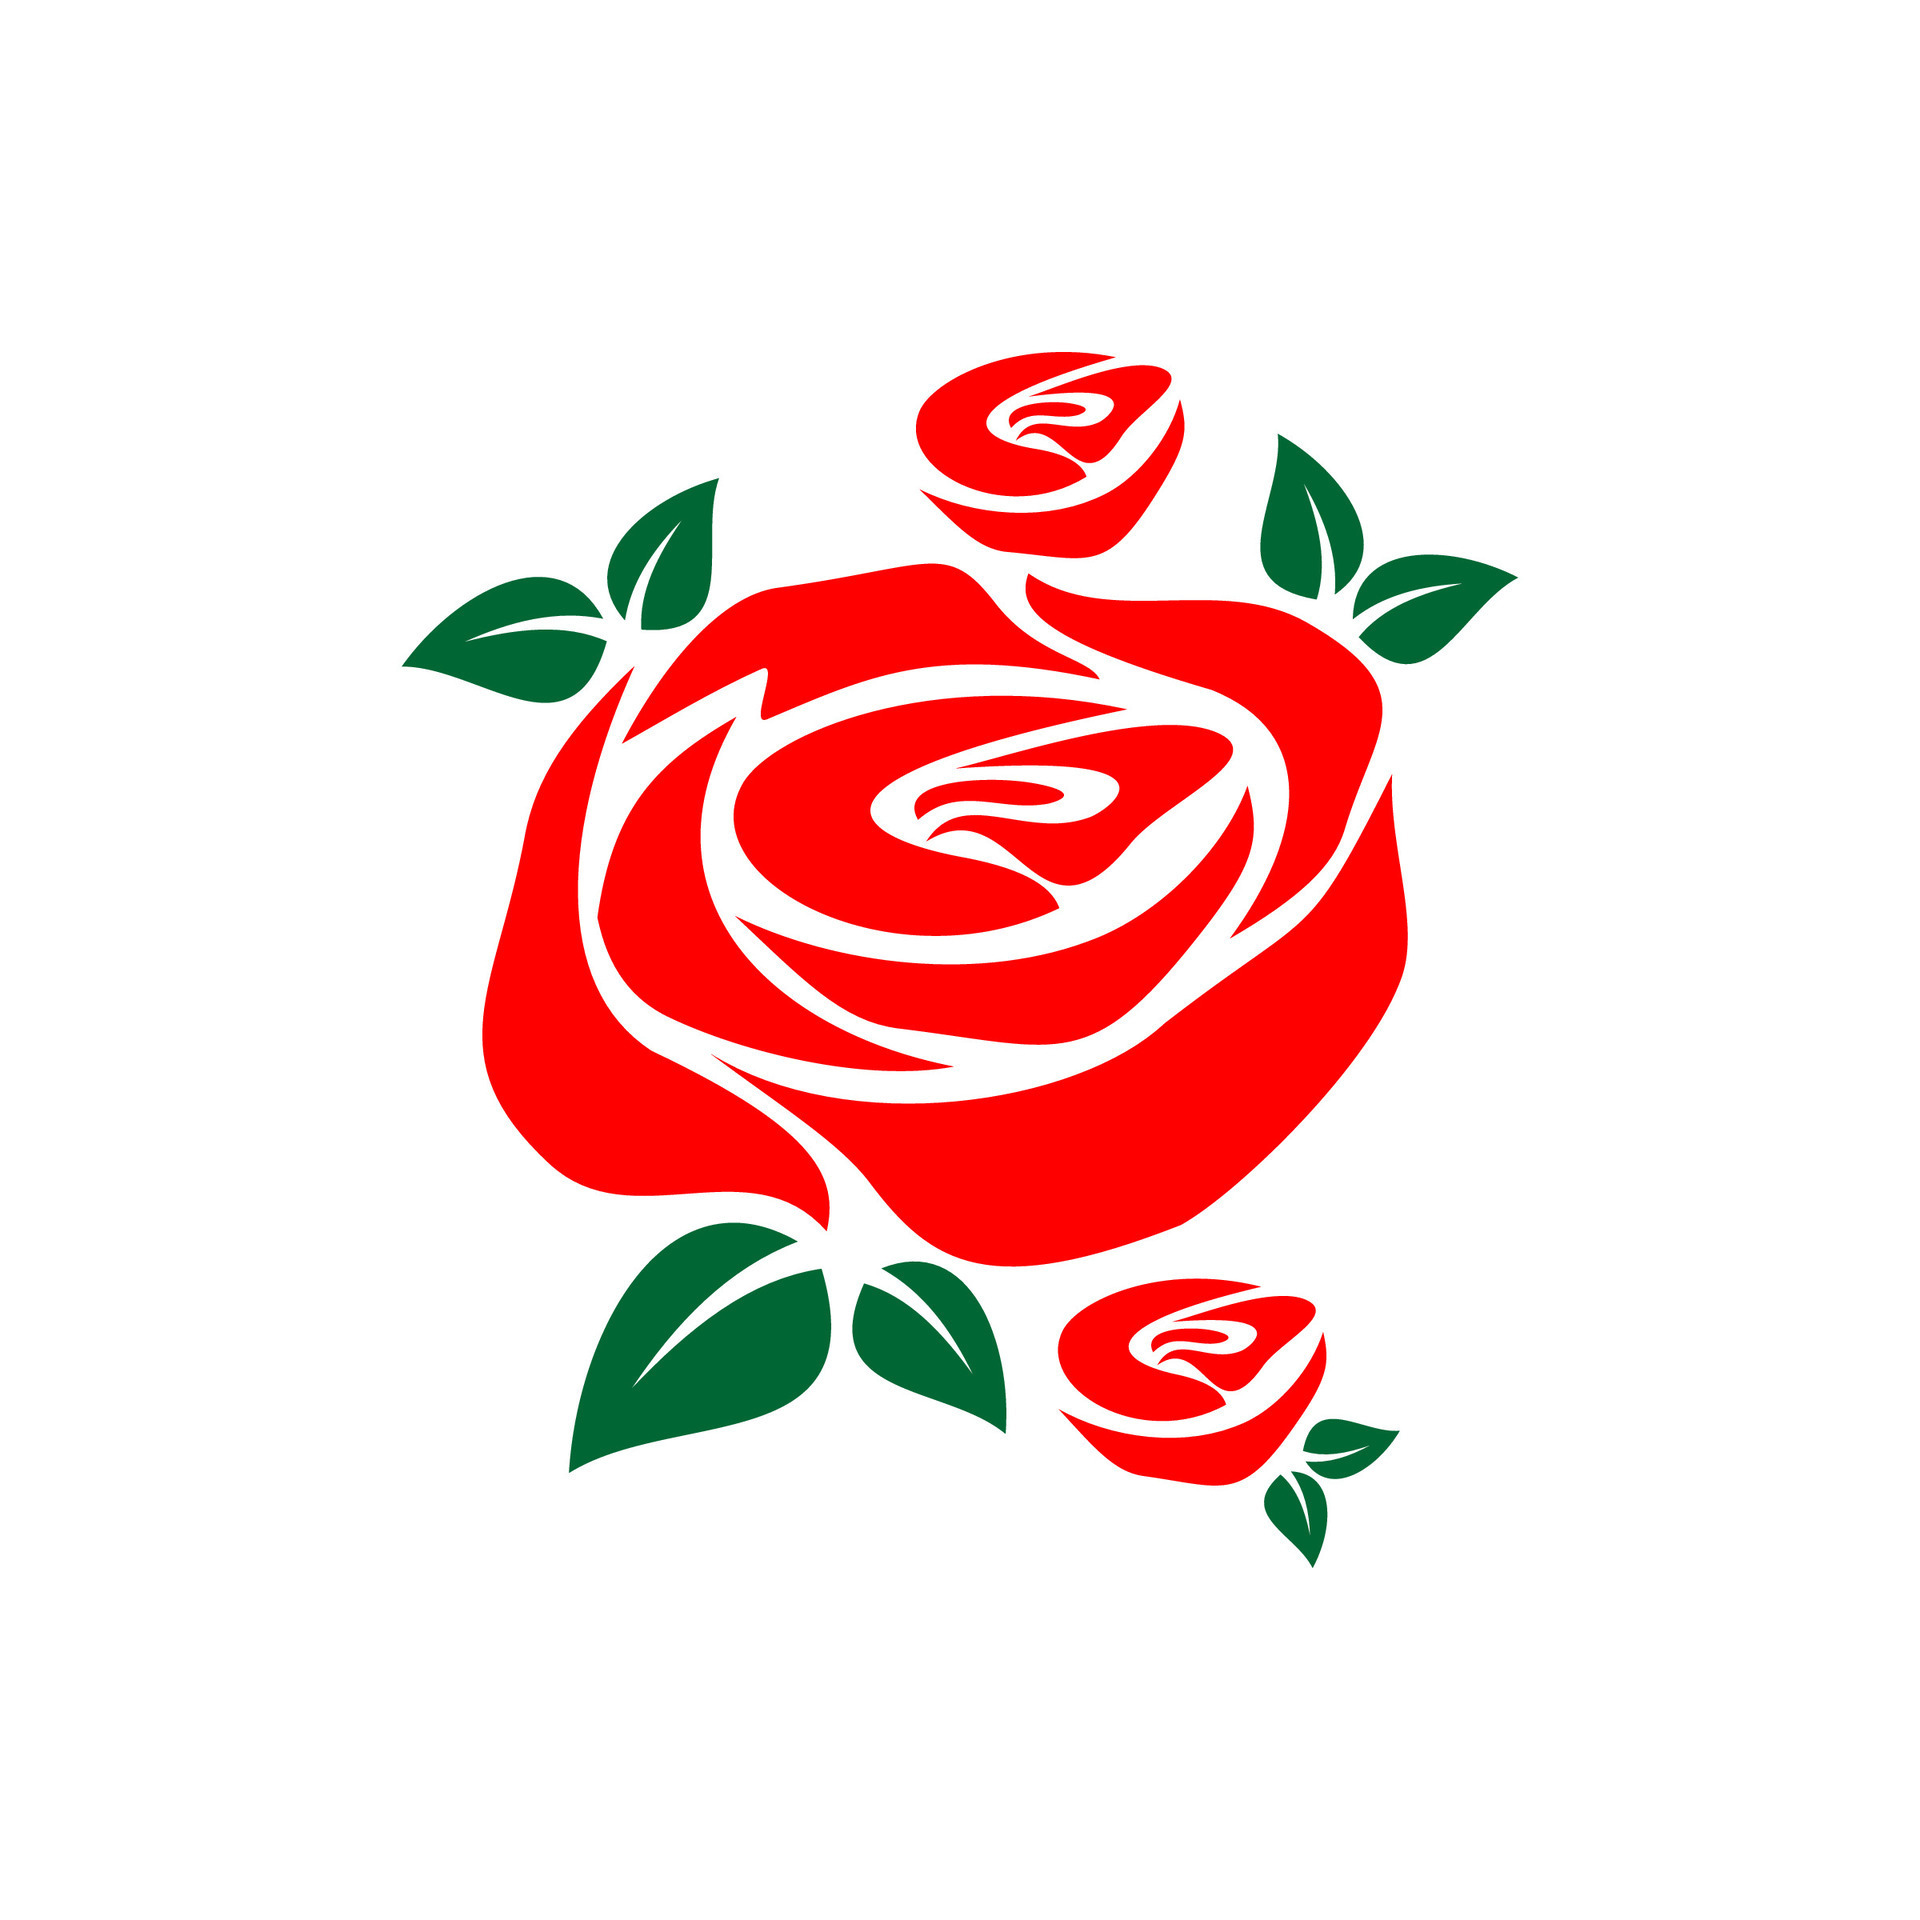 rose flower silhouette vector design on white background 26649995 ...